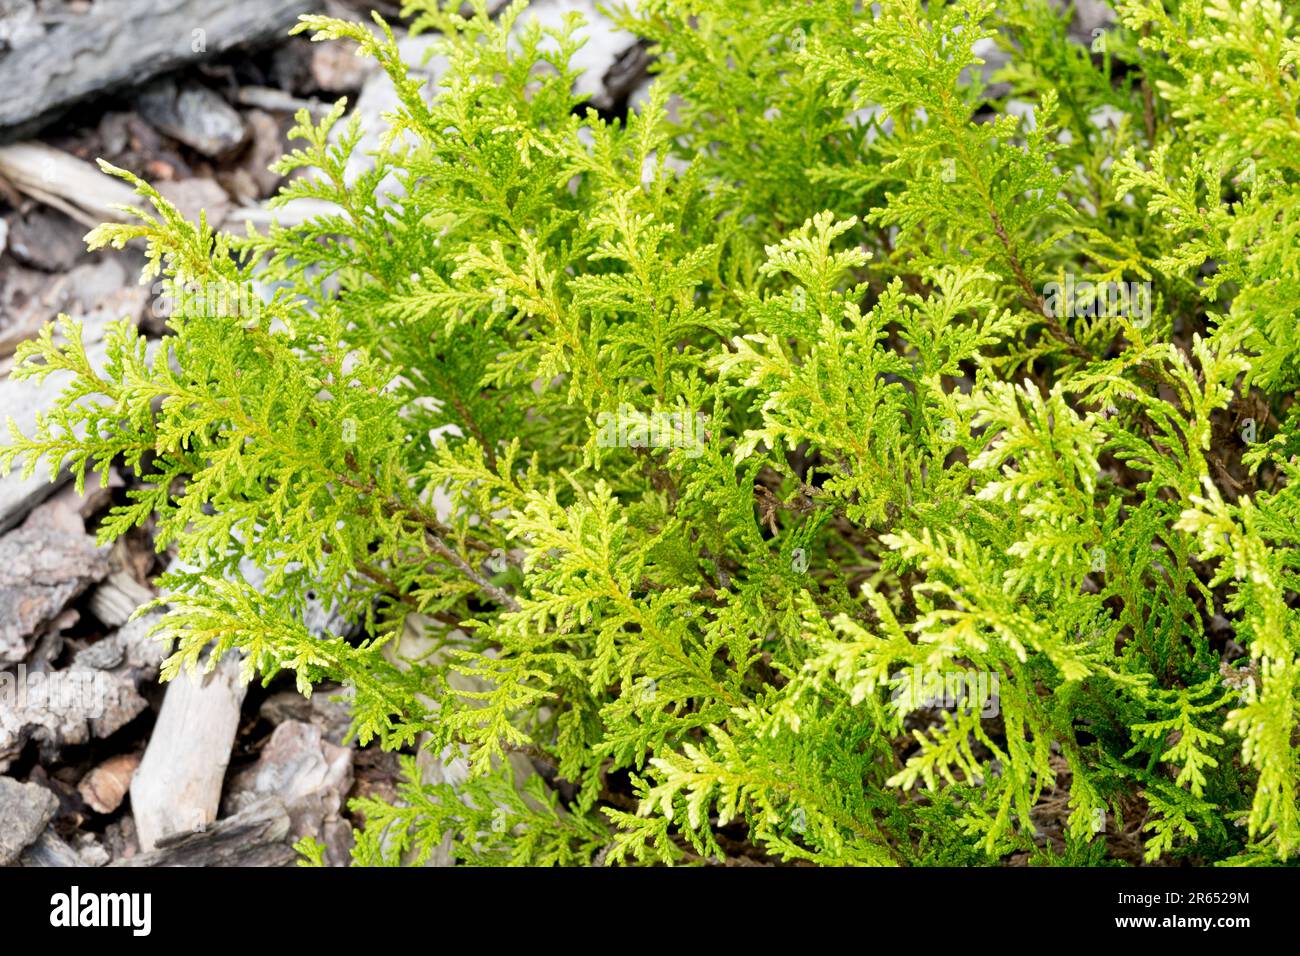 Chamaecyparis pisifera 'White Pygmy'  Sawara Cypress, small and cushion-shaped Stock Photo